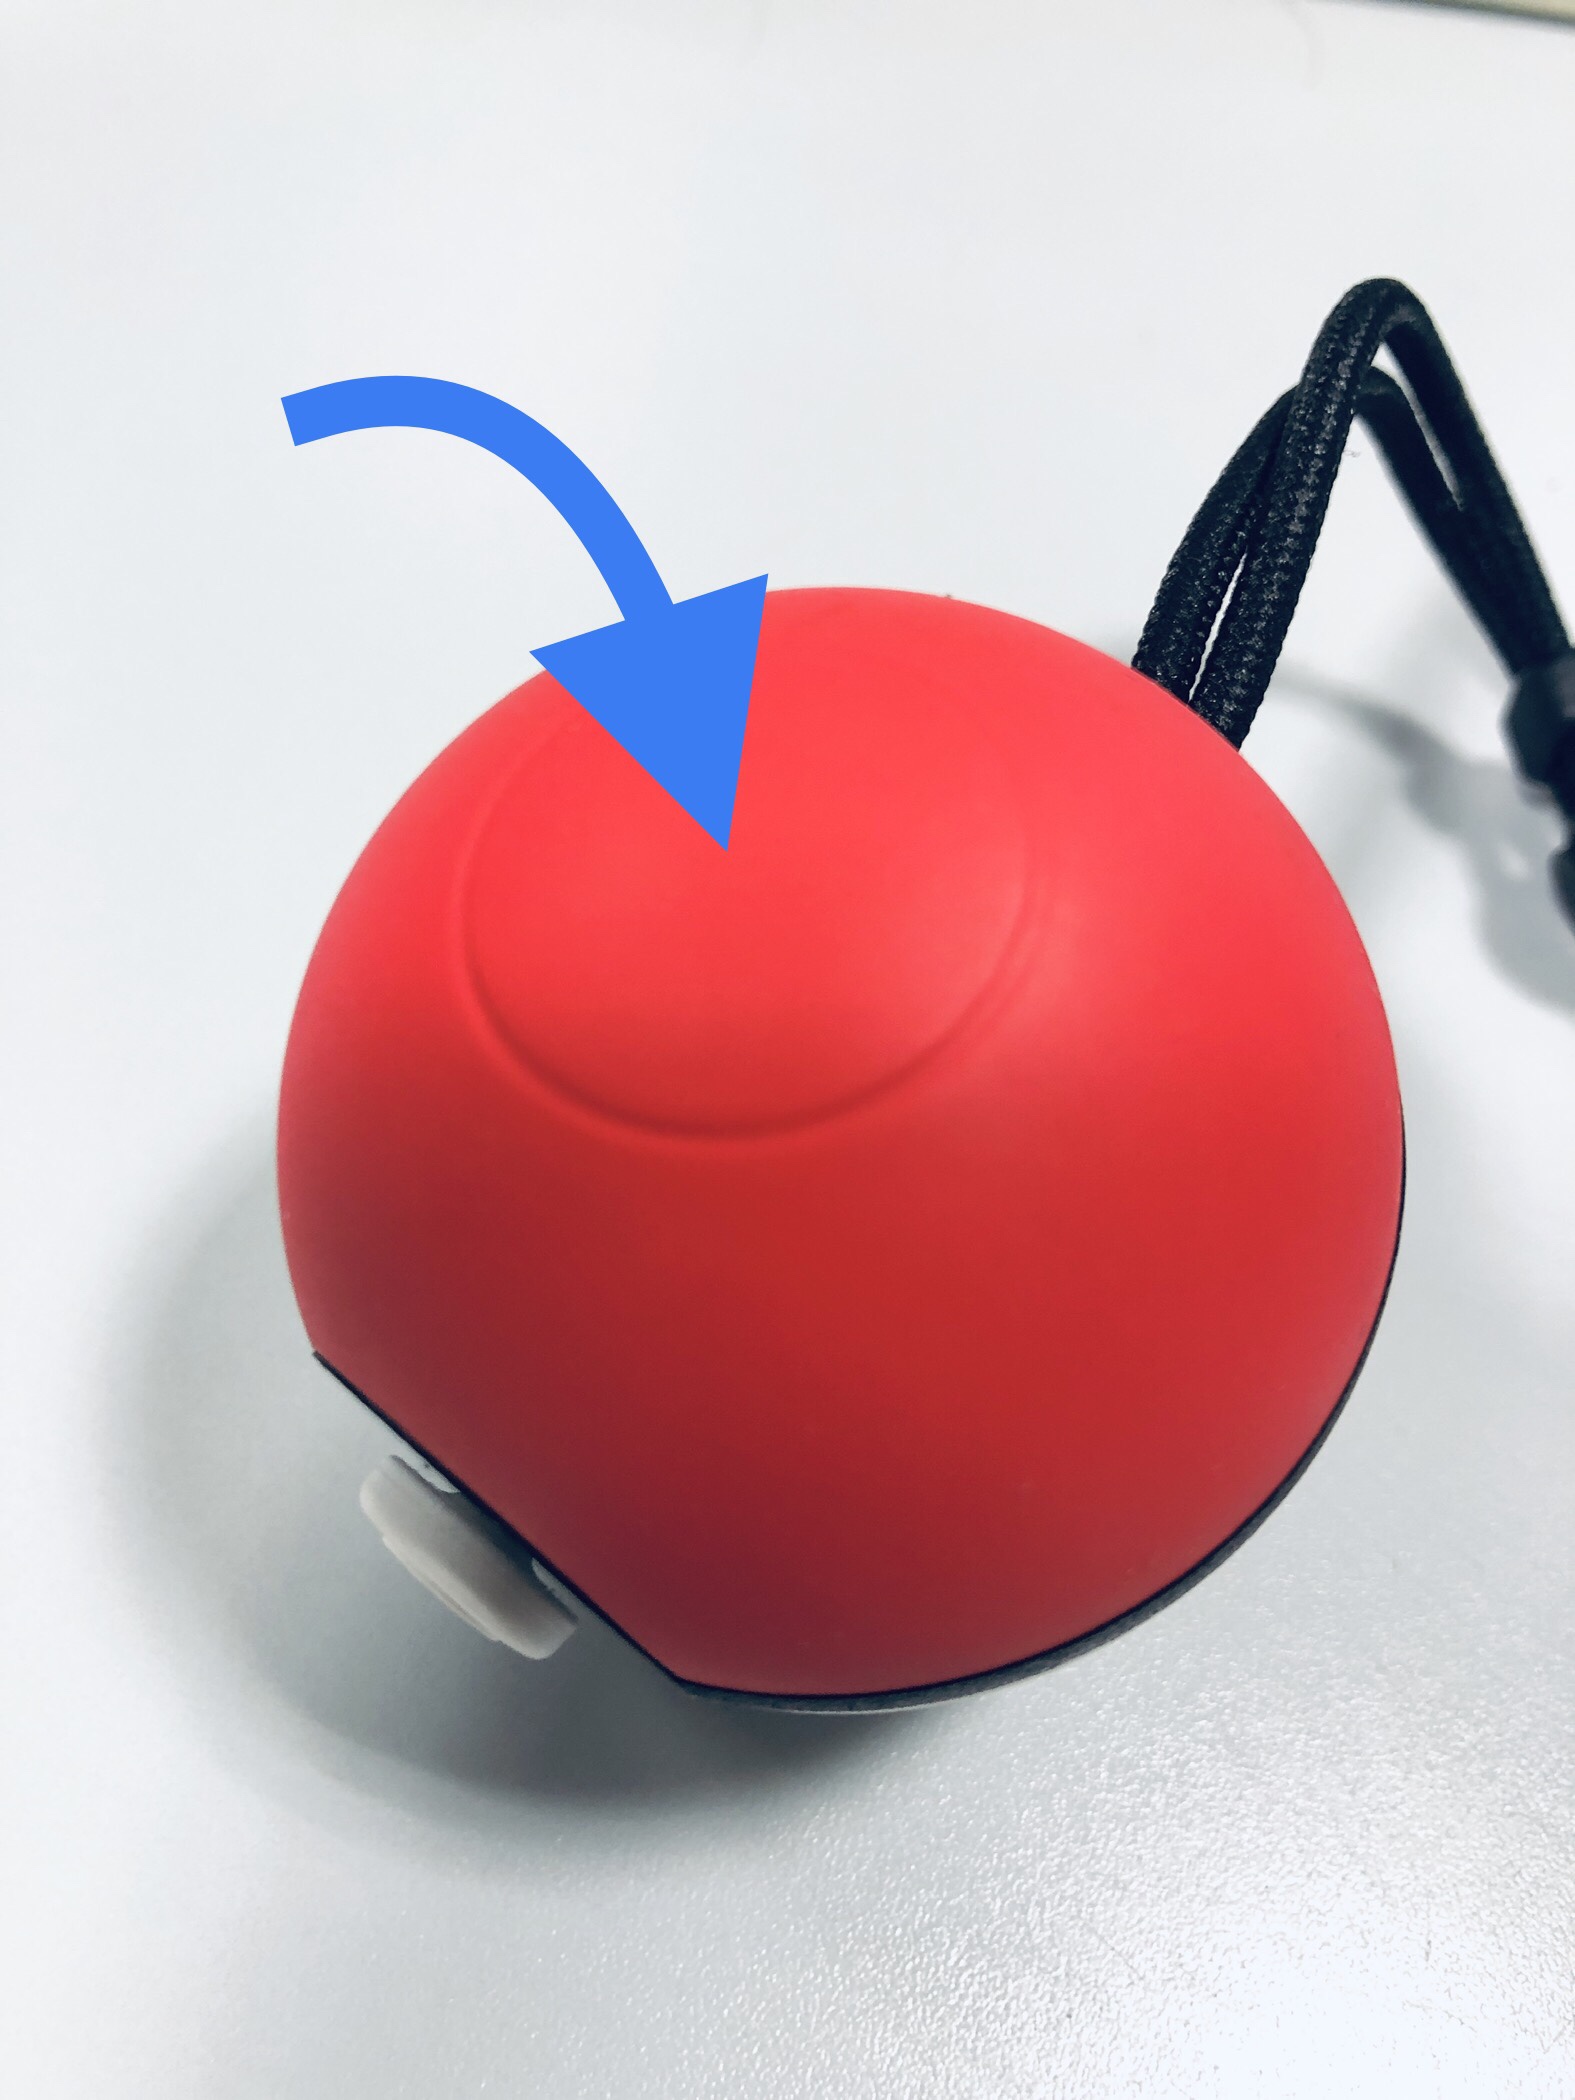 繋がらない Iphoneのポケモンgoにモンスターボール Plusを繋げる方法 Indie Game 新世界